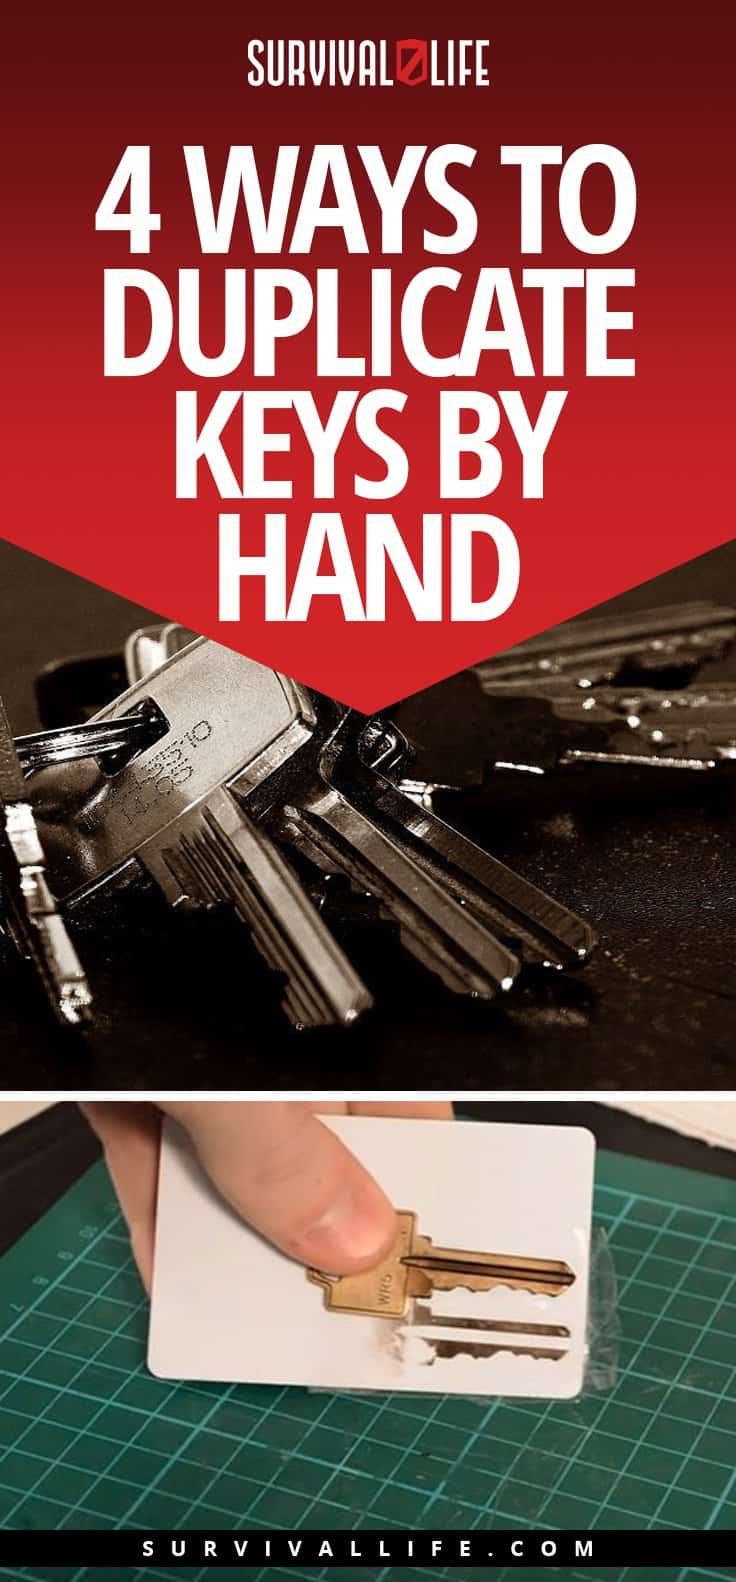 Modi per duplicare le chiavi a mano | 